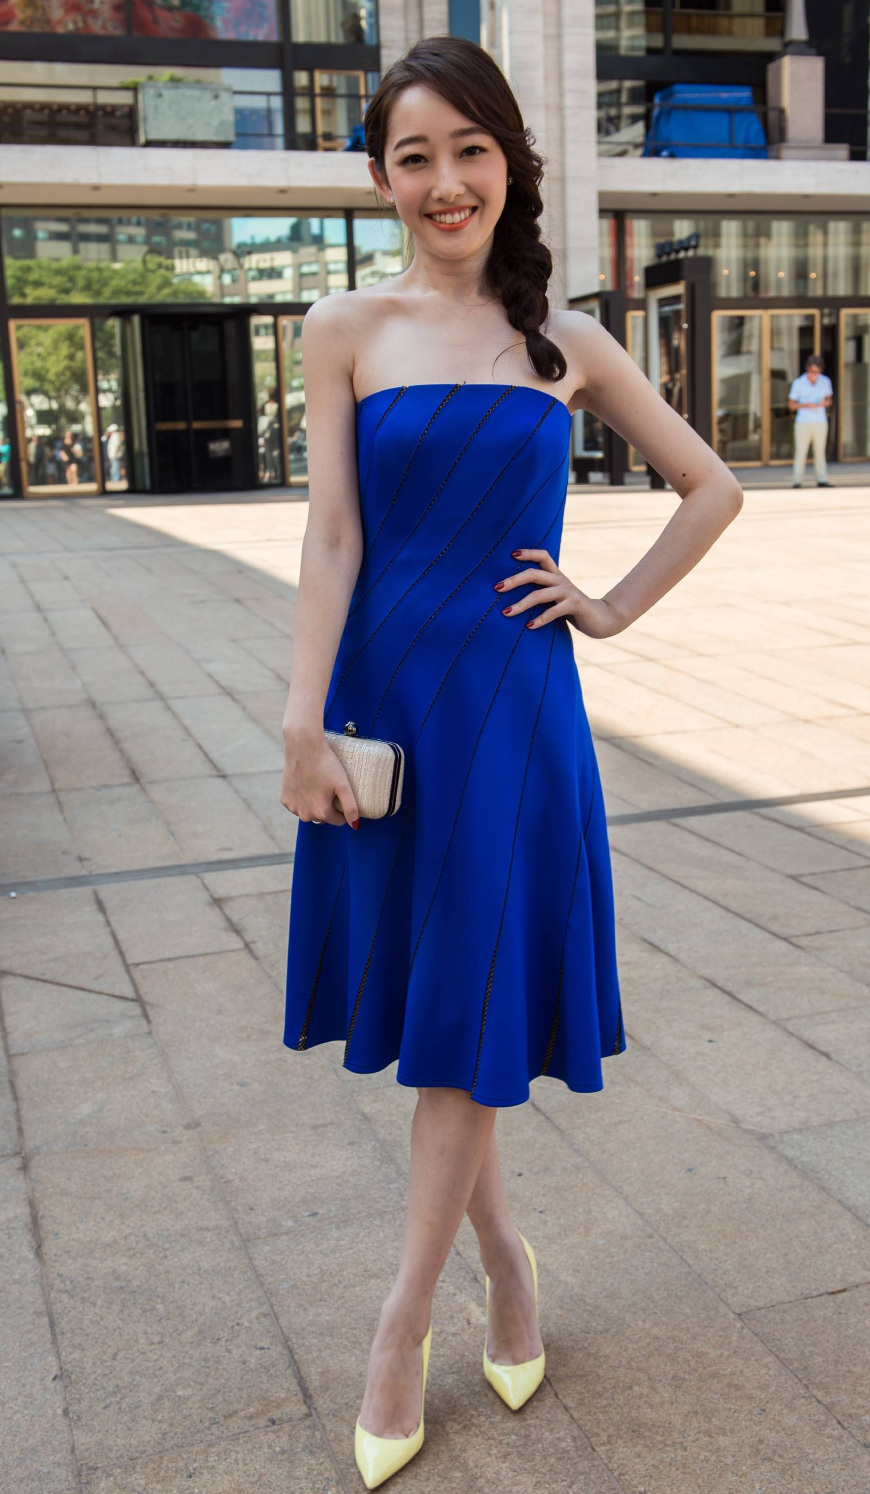 除了这个最流行的蓝色长裙,她的高跟鞋只露两个脚趾头,也是一种时尚和